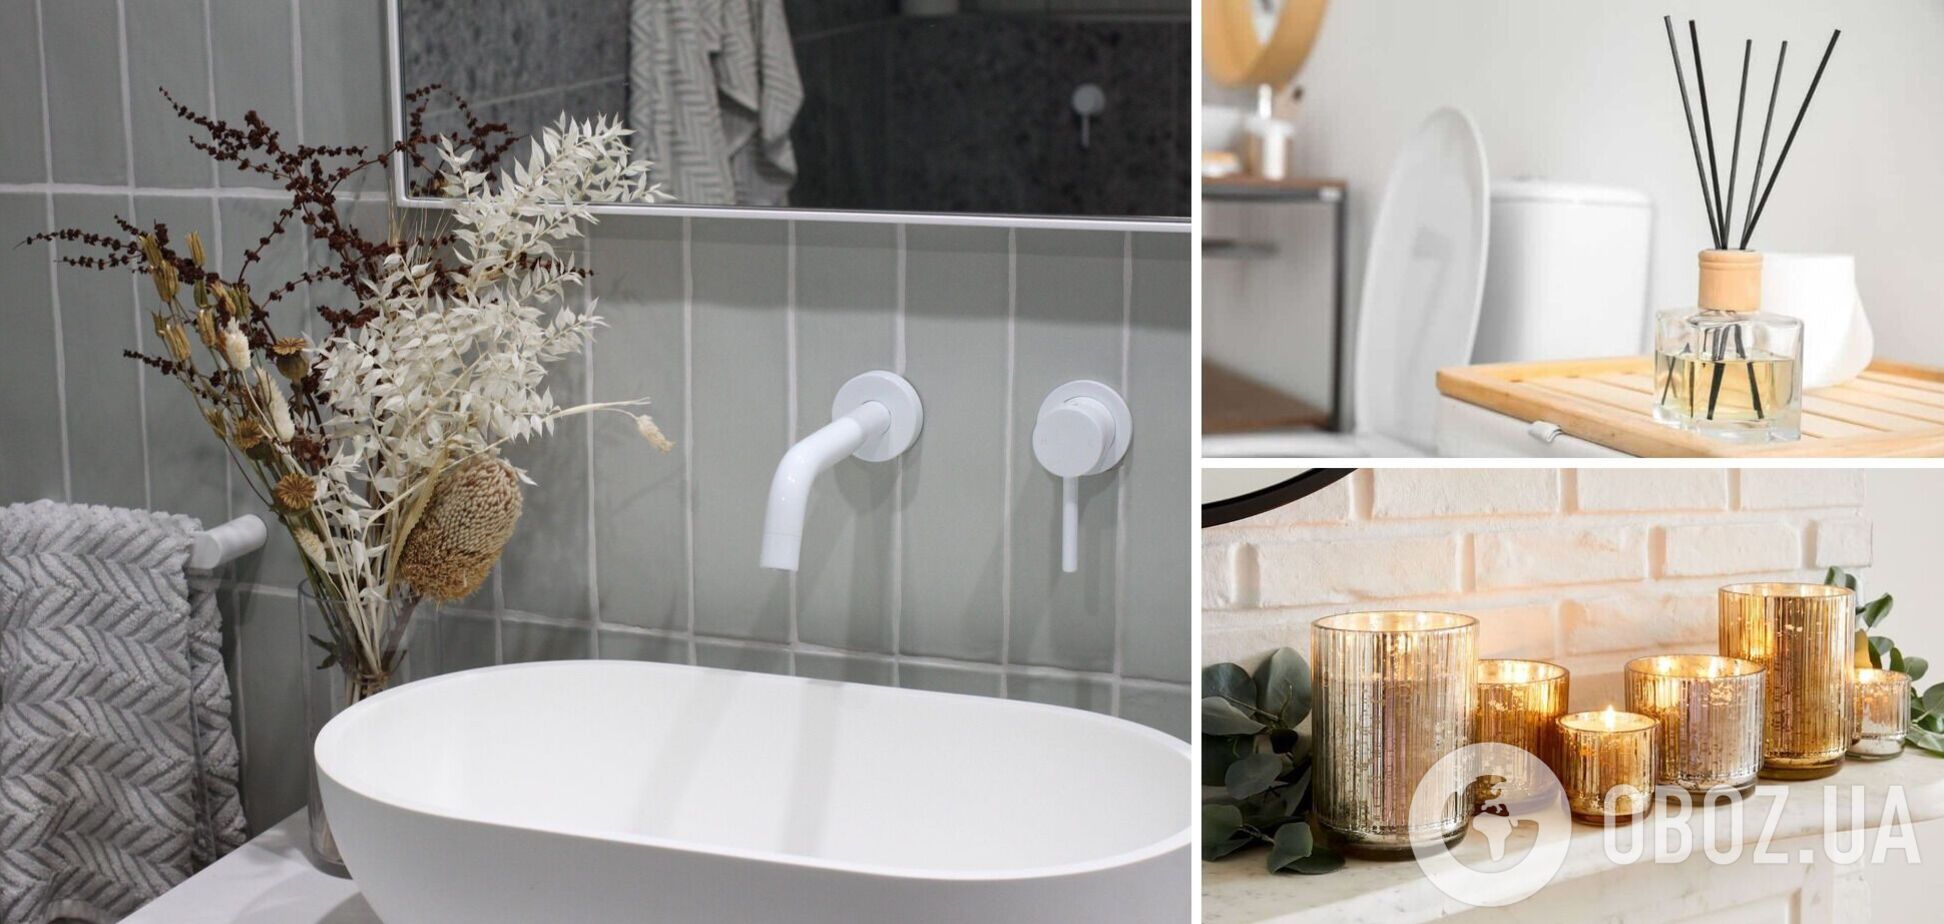 У ванній стоятиме неймовірний аромат: як зробити, щоб вдома приємно пахло